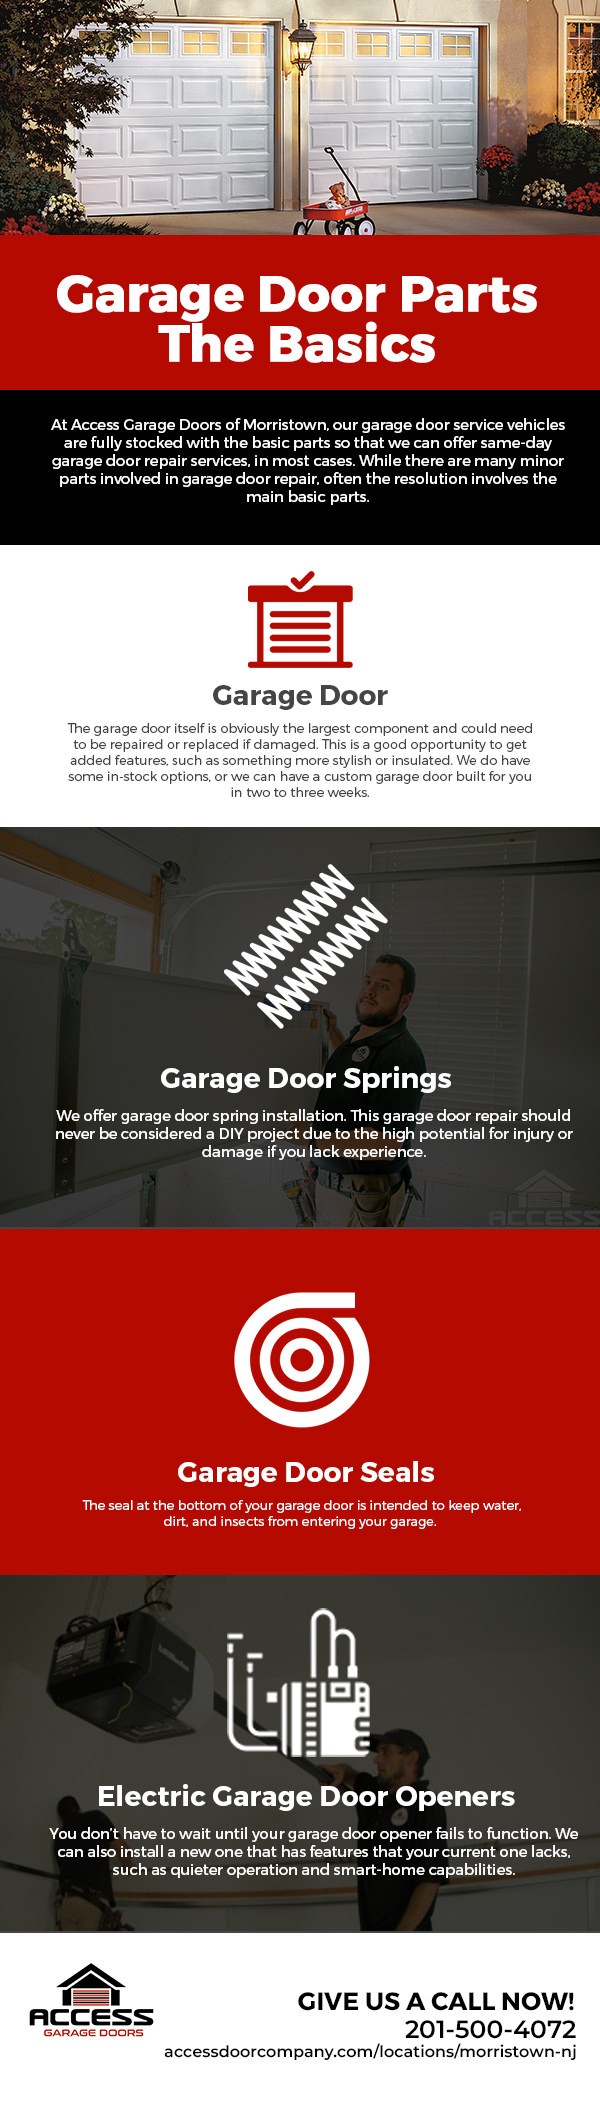 Garage Door Repair: The Basic Parts [Infographic]